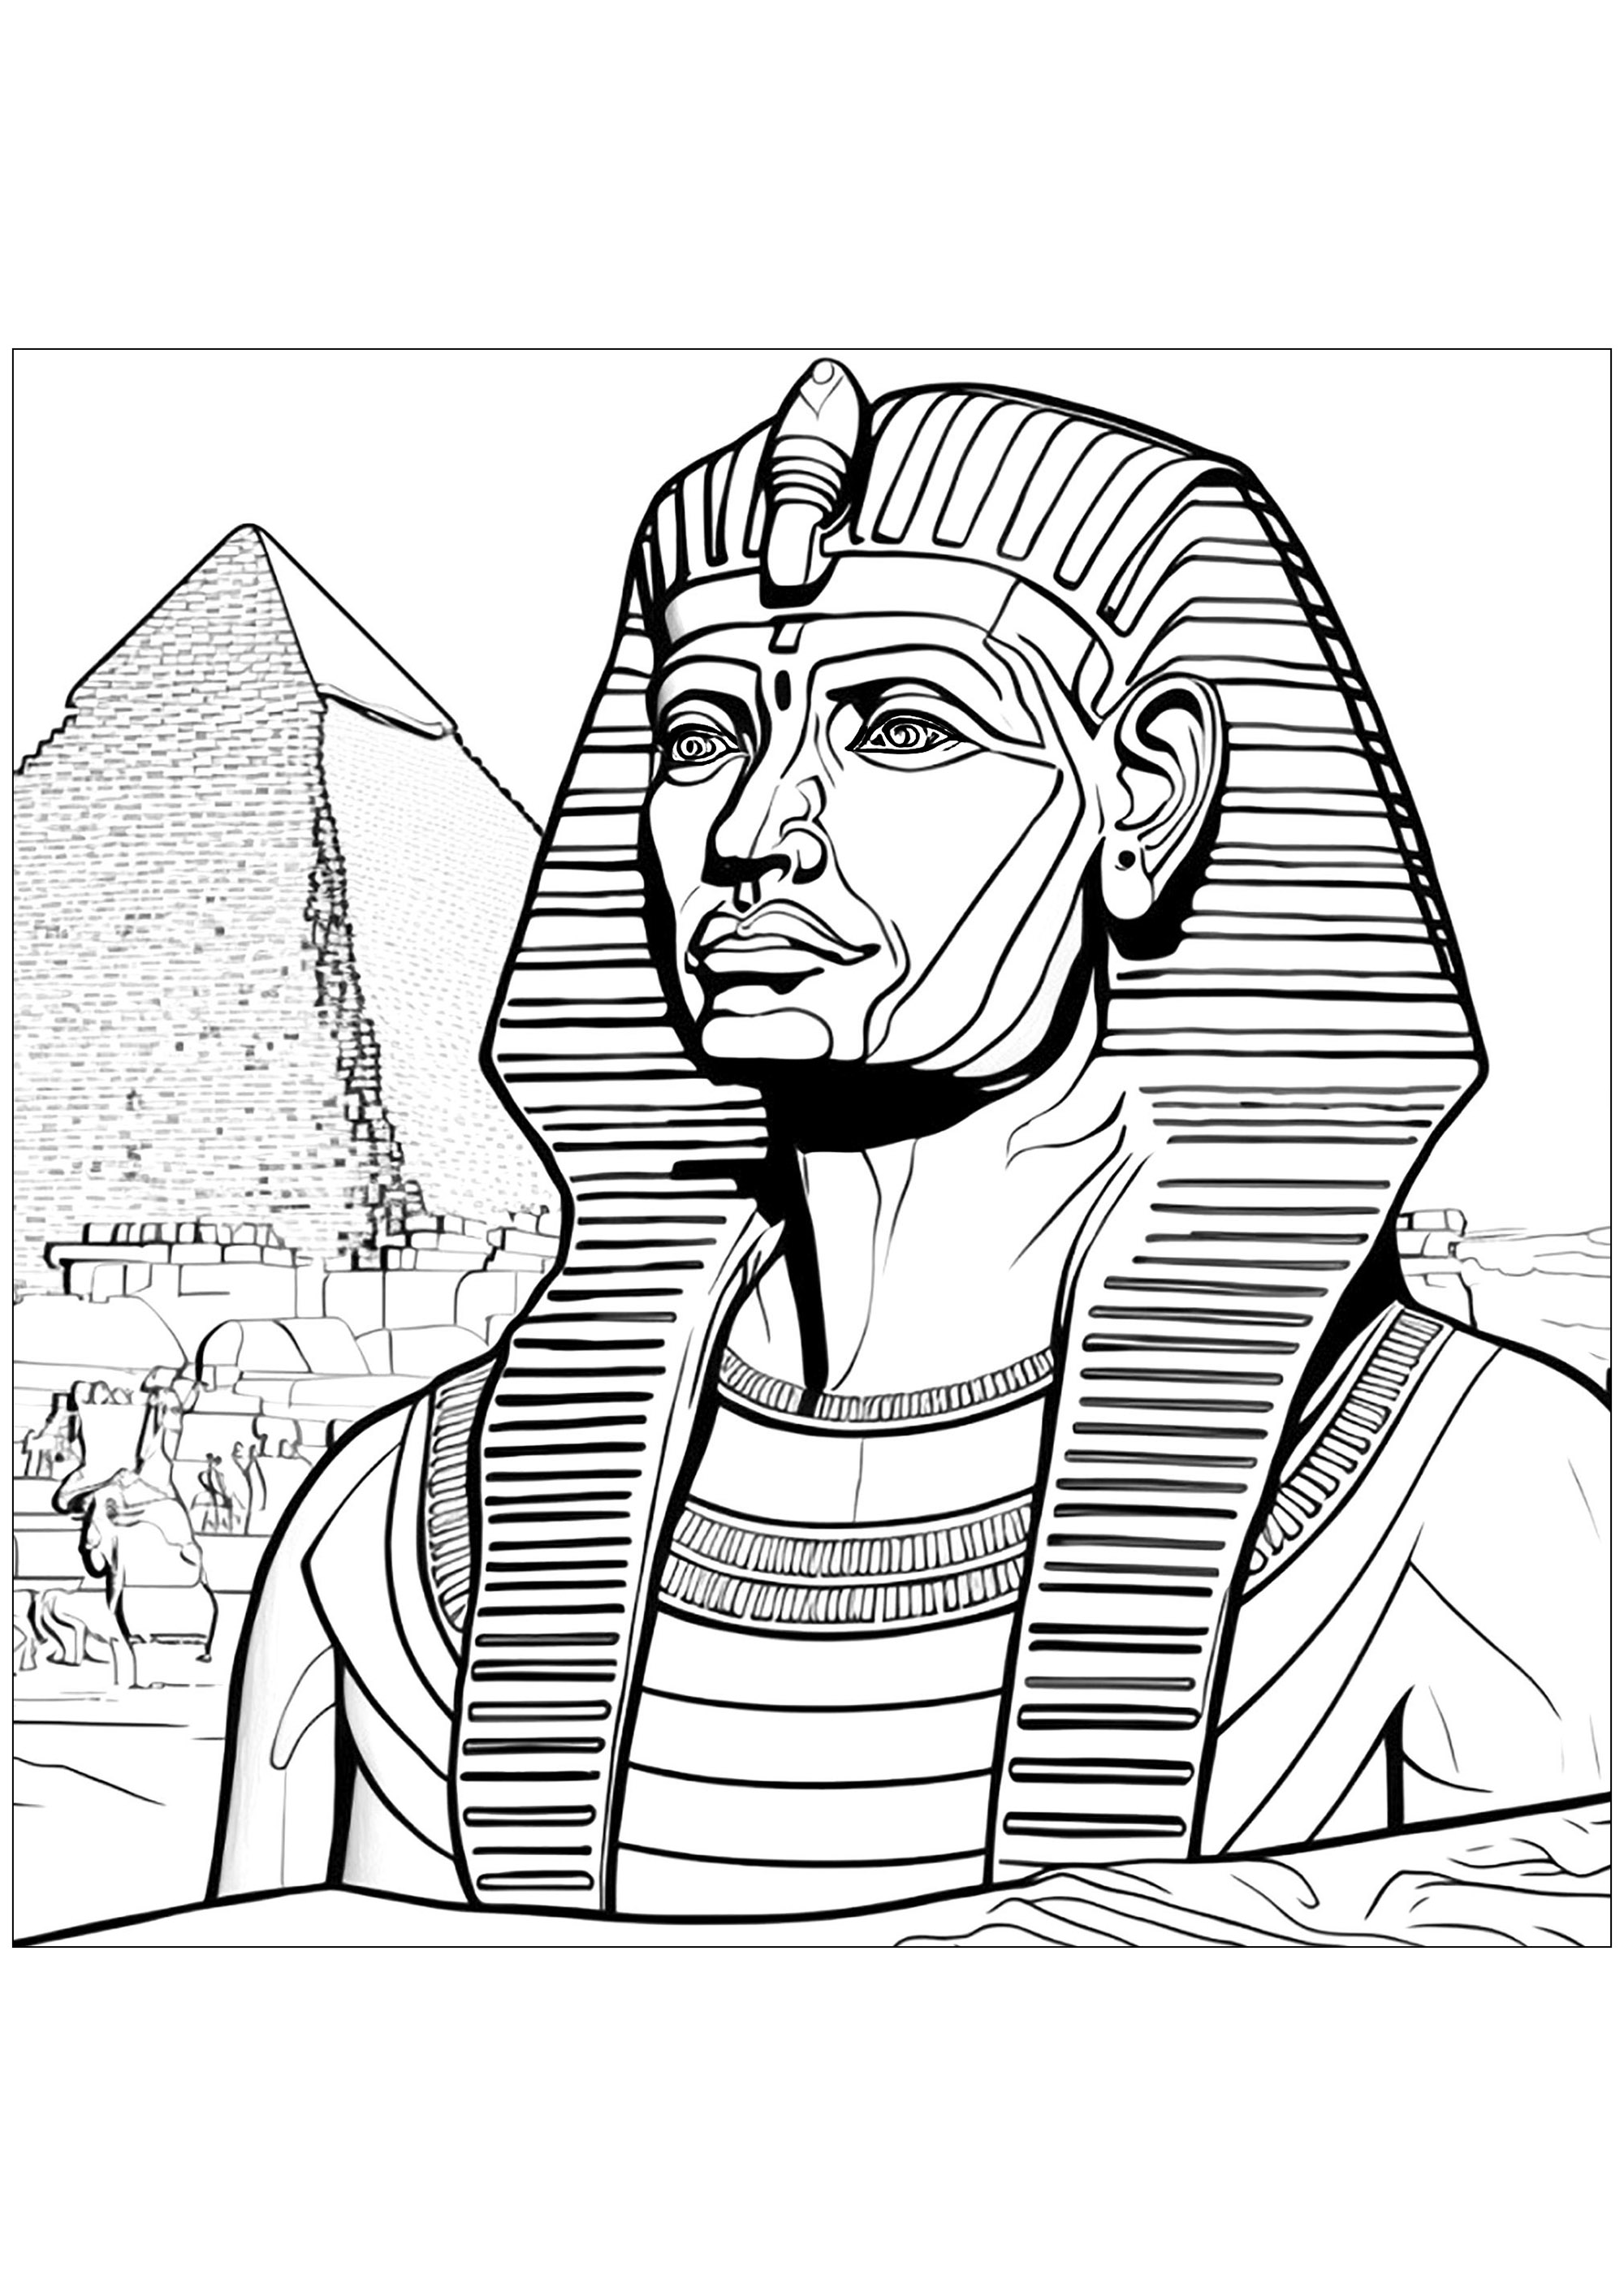 O Faraó em frente a uma pirâmide no Egipto. O faraó usa a sua coroa, que deve ser colorida com cores brilhantes.Os detalhes da pirâmide são muito precisos e dão à coloração um aspecto majestoso e realista.Esta coloração é uma excelente forma de estimular a imaginação das crianças e de as ensinar sobre a história do Egito.